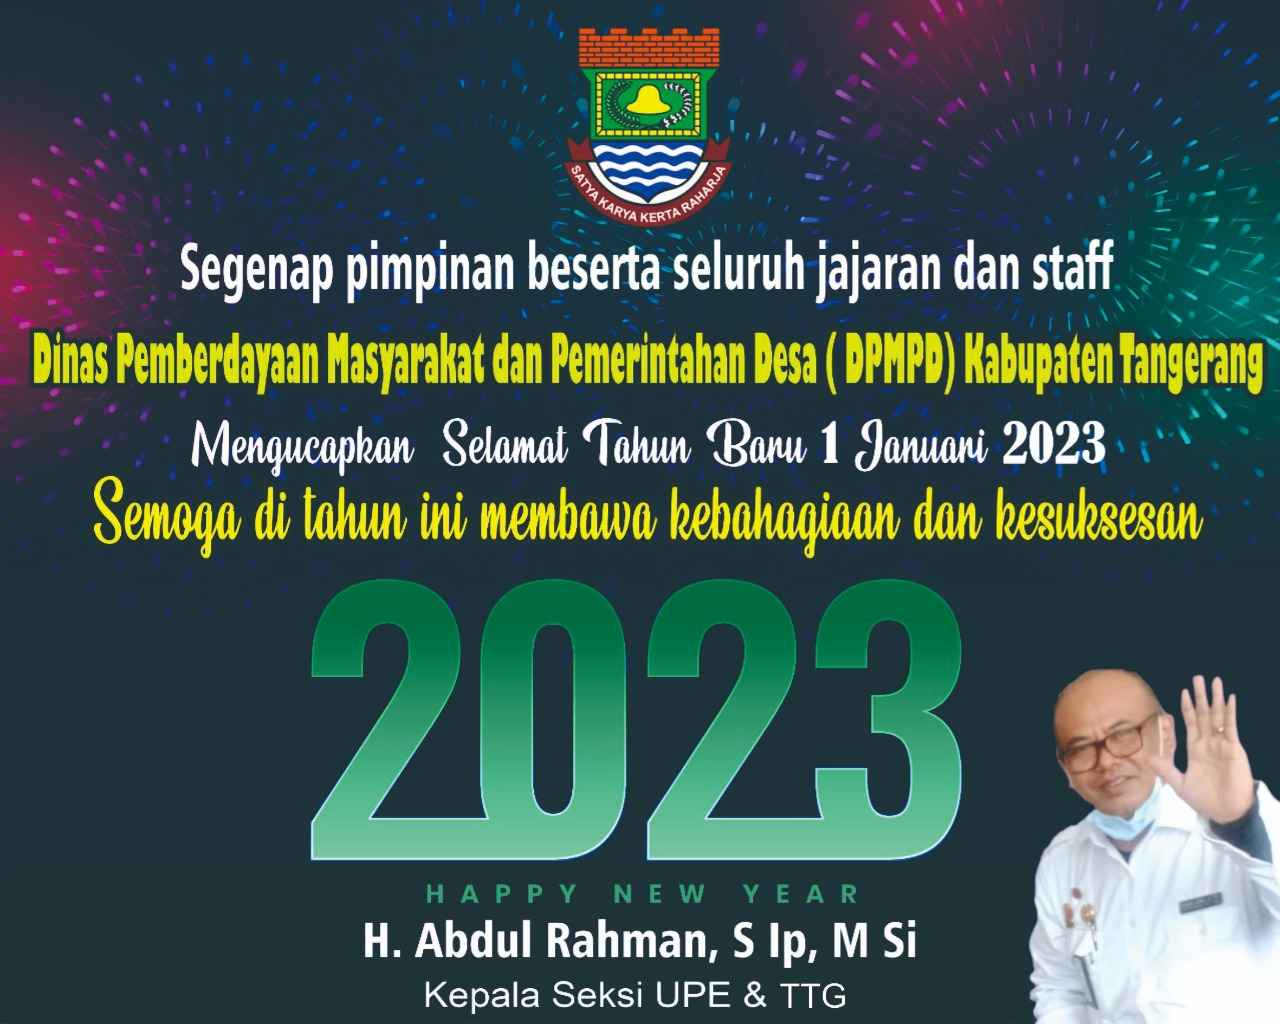 Dinas Pemberdayaan Masyarakat dan Pemerintahan Desa ( DPMPD ) Kabupaten Tangerang Mengucapkan Selamat Tahun Baru 1 Januari 2023